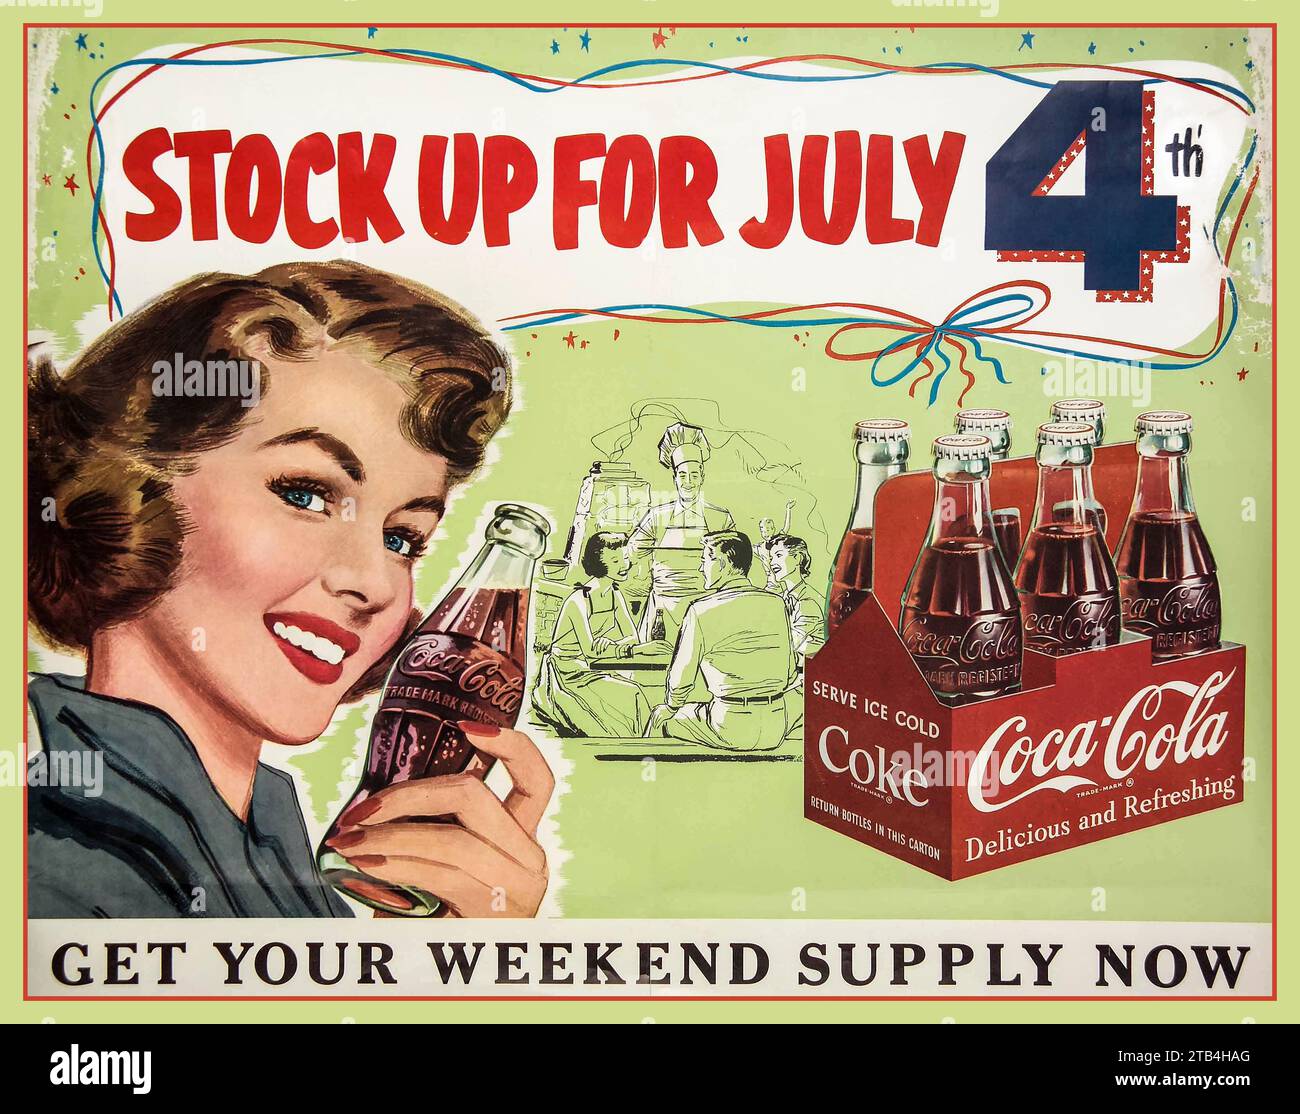 Vintage 1940er Jahre Coca Cola Werbeplakat „Vorrat für den 4. Juli, hol dir jetzt dein Wochenendvorrat“ US-Bundesfeiertag feiert Unabhängigkeitstag Illustration Werbung America Americana USA Stockfoto